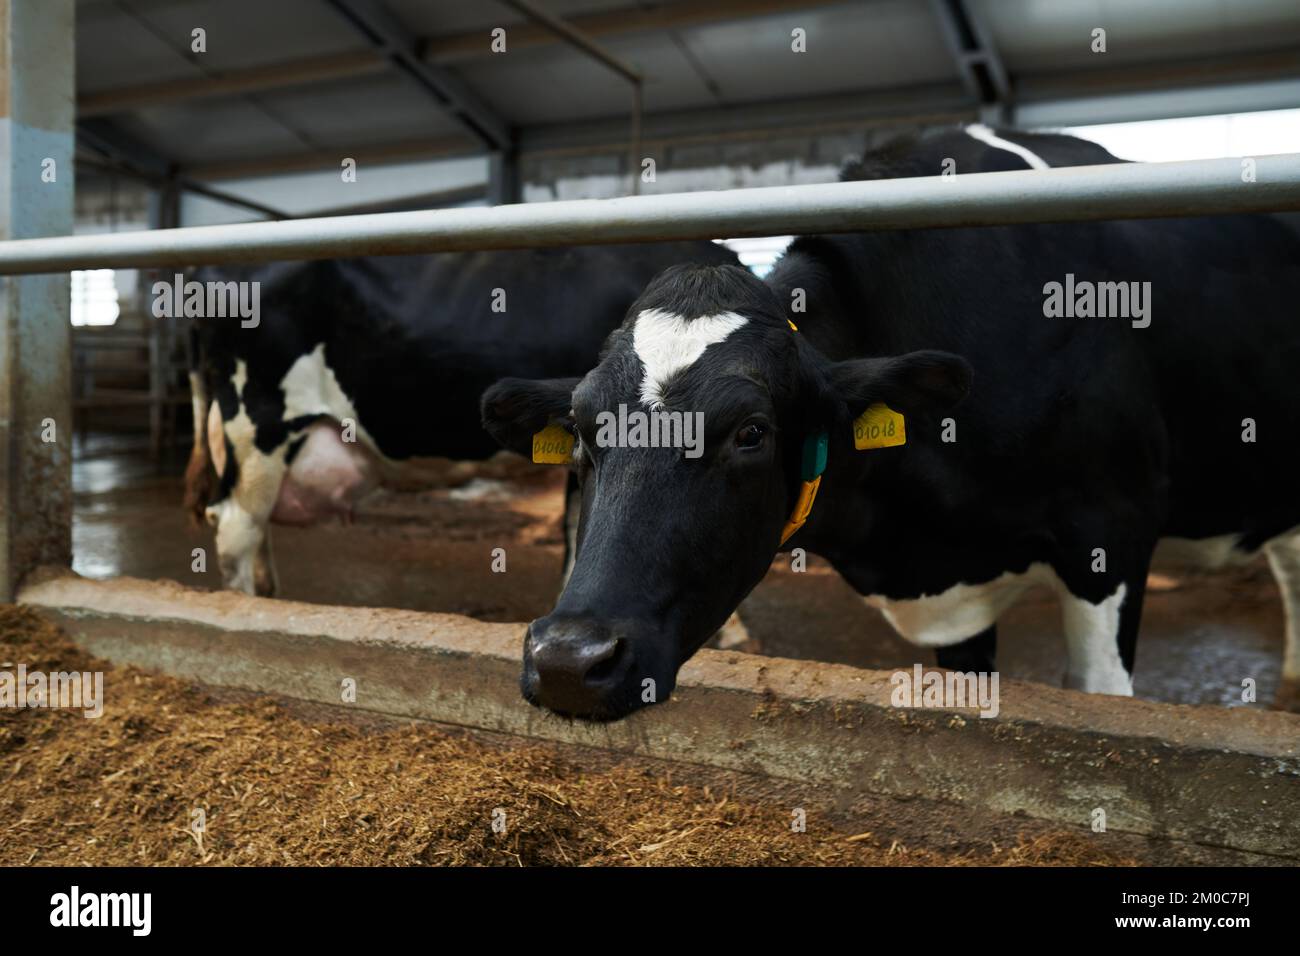 Vache laitière noire avec des taches blanches sur le front et la poitrine debout dans le cow-shed devant l'appareil photo et manger de la nourriture de l'alimenteur Banque D'Images